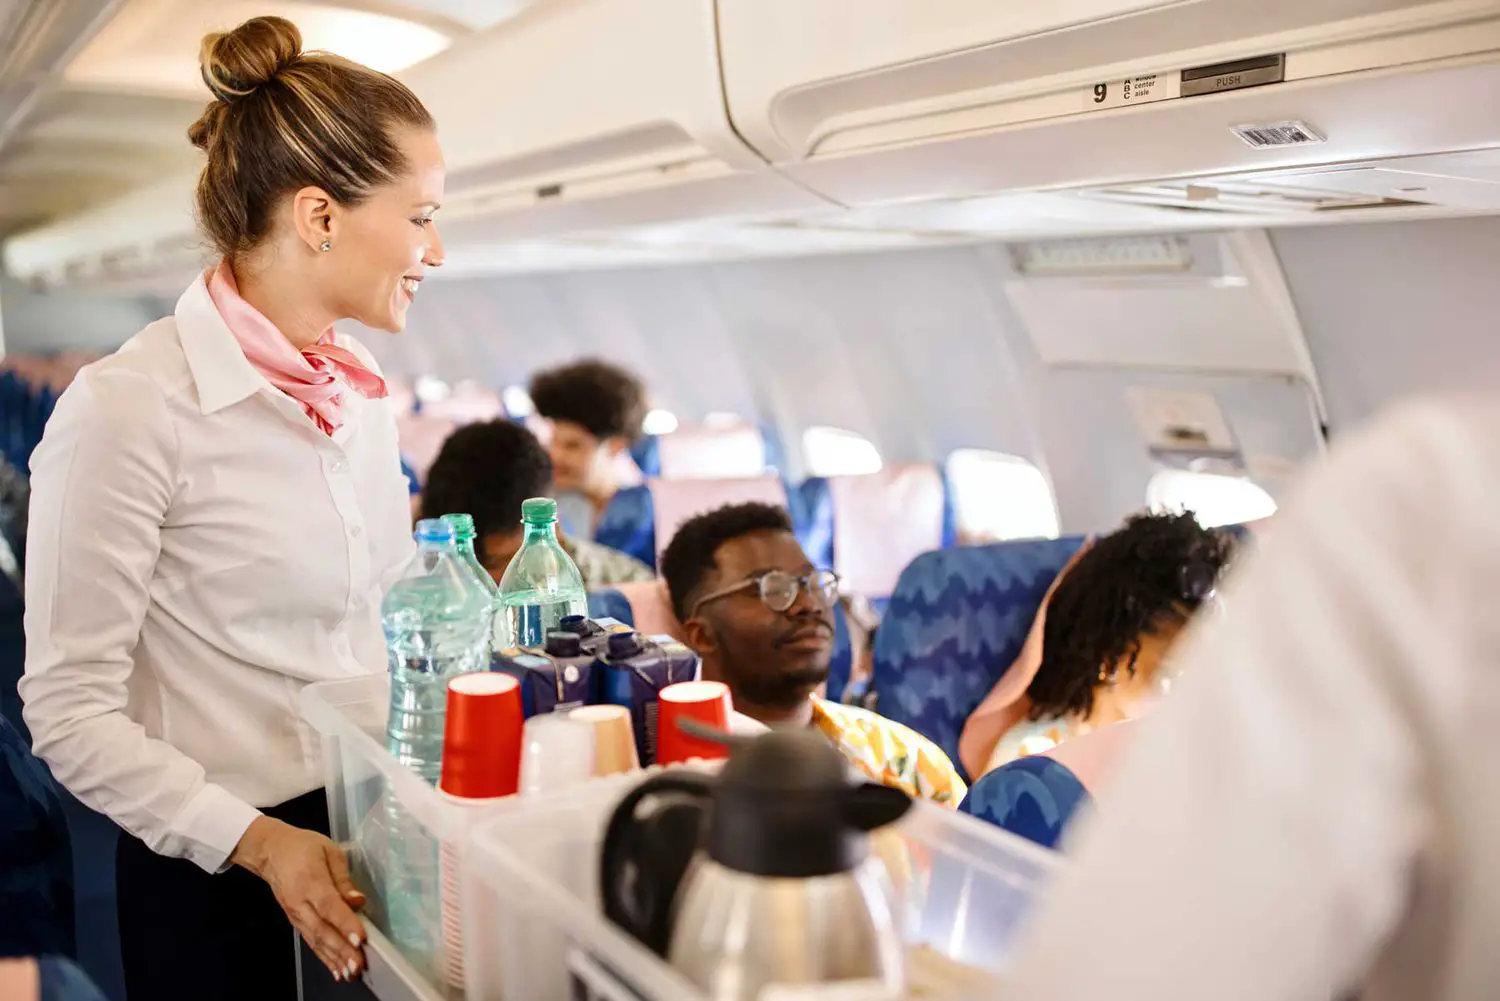 ¿Vale la pena ser asistente de vuelo? Una mirada detallada a los pros y los contras.